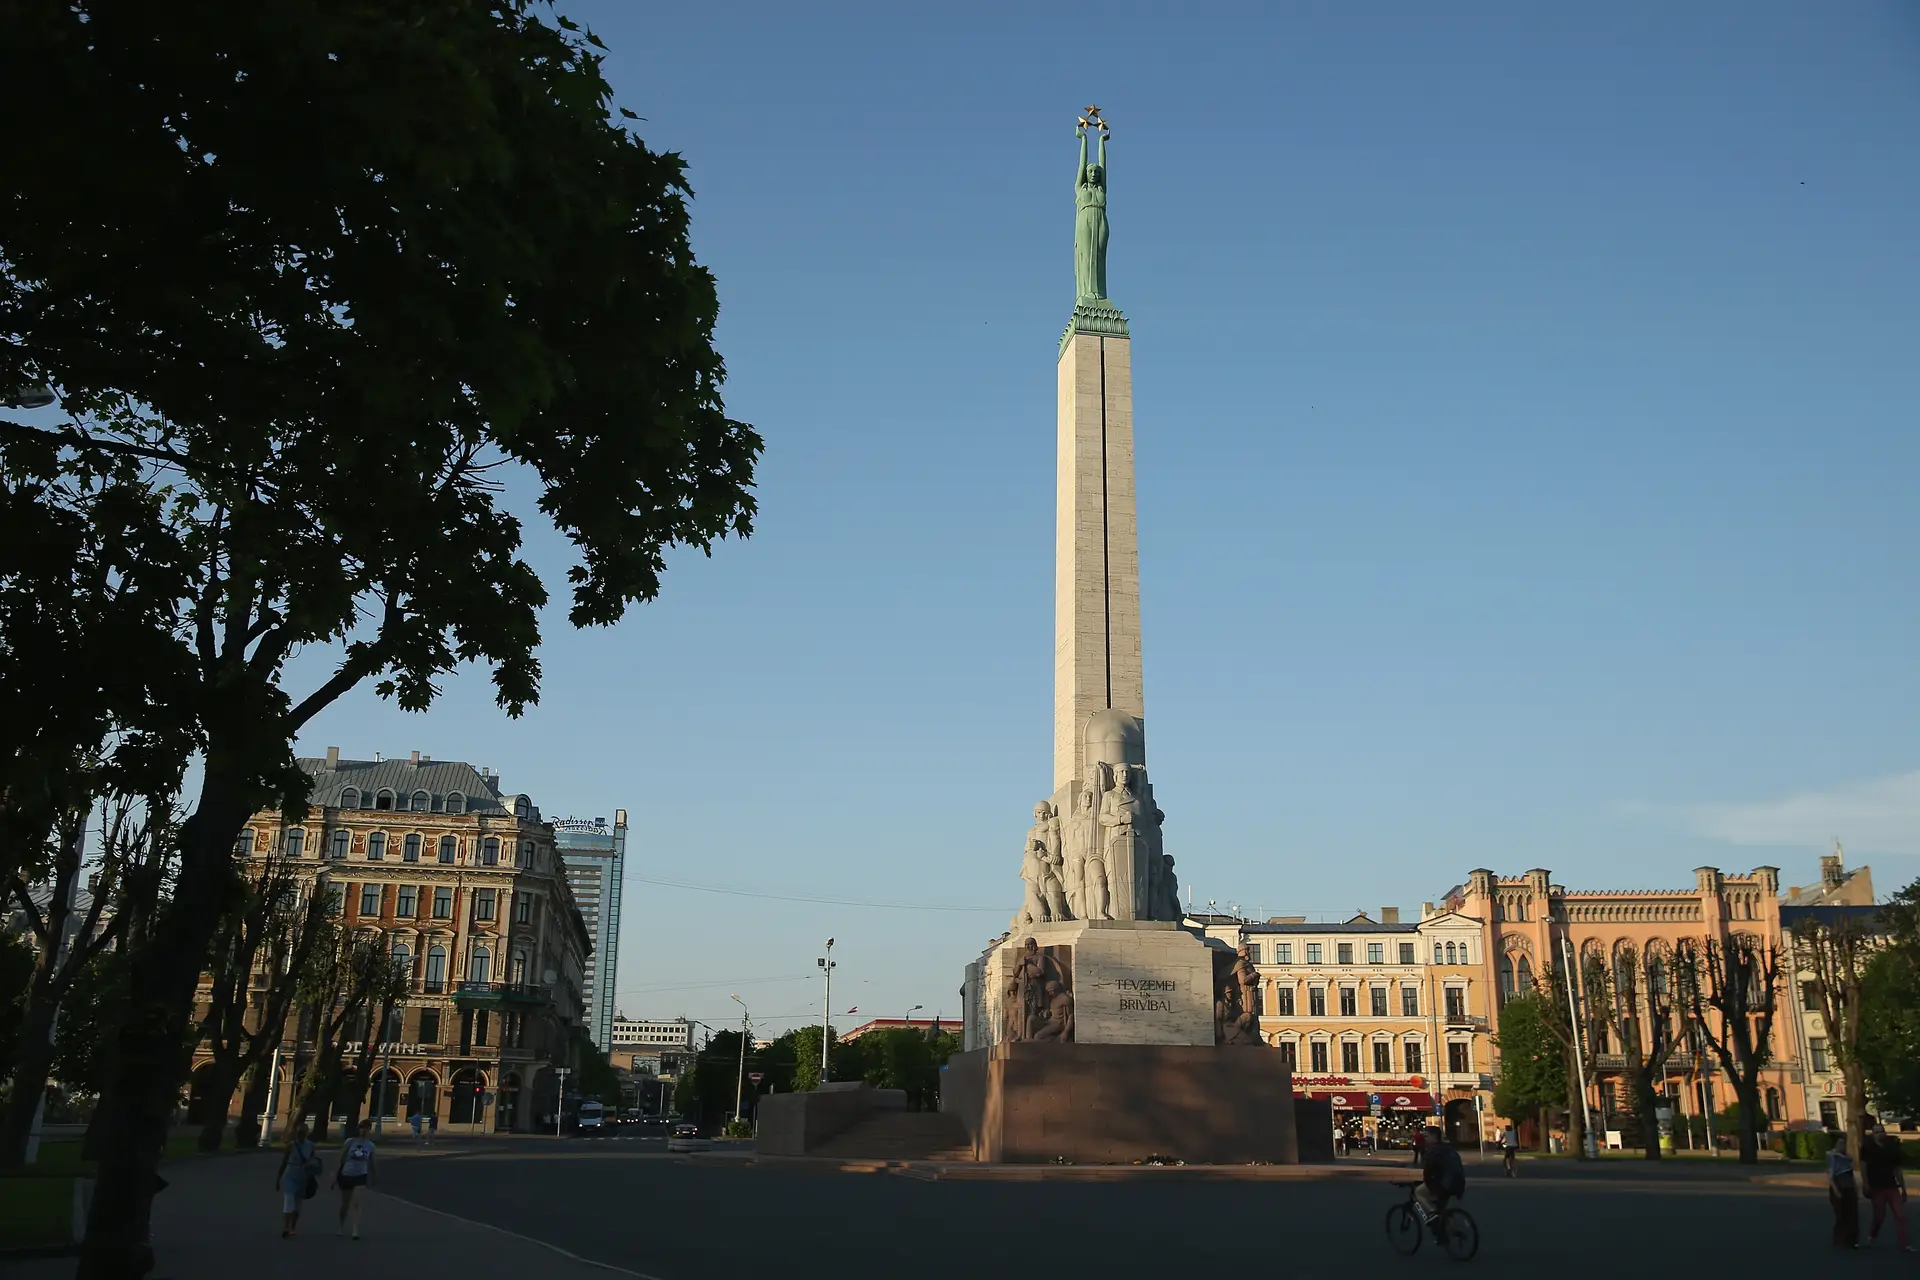 Letónia remove monumento da era soviética uma semana depois da Estónia